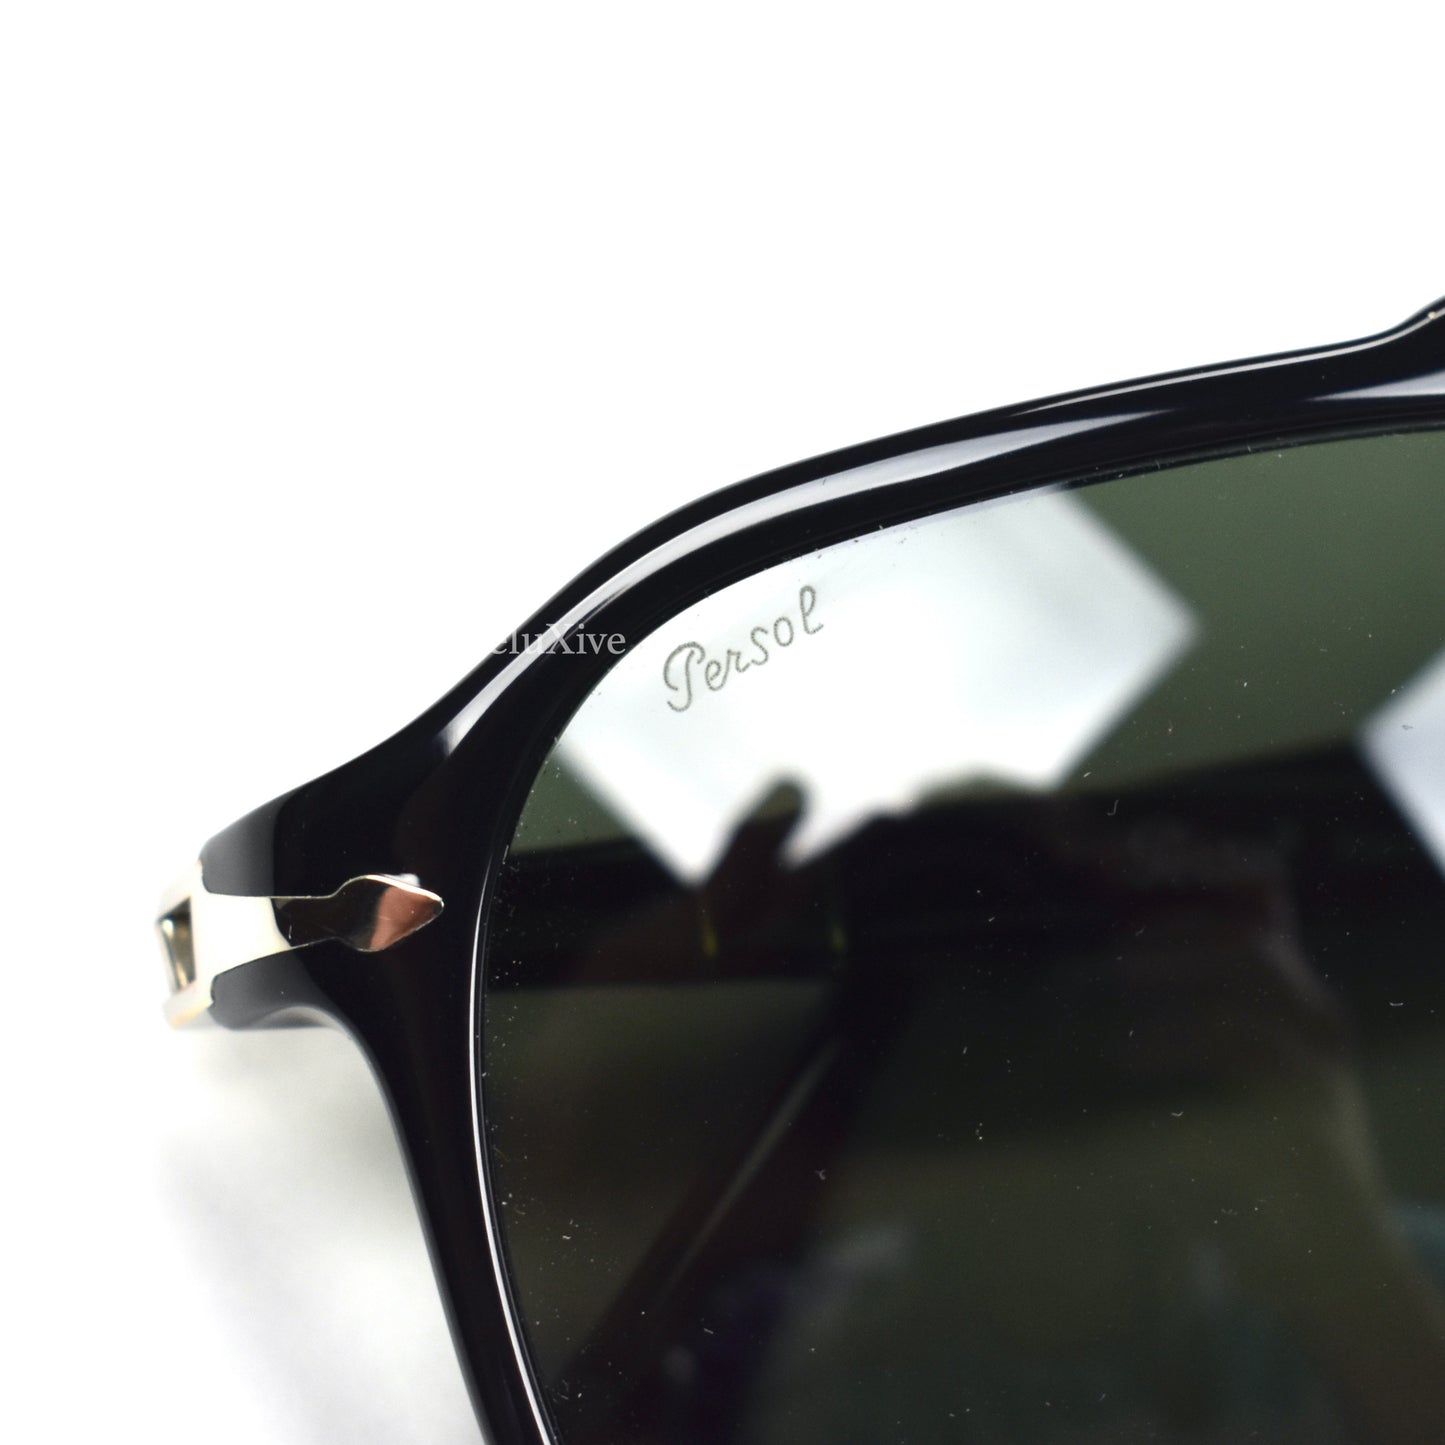 Persol - 3223-S Black / Gray Lens Vintage Pilot Sunglasses